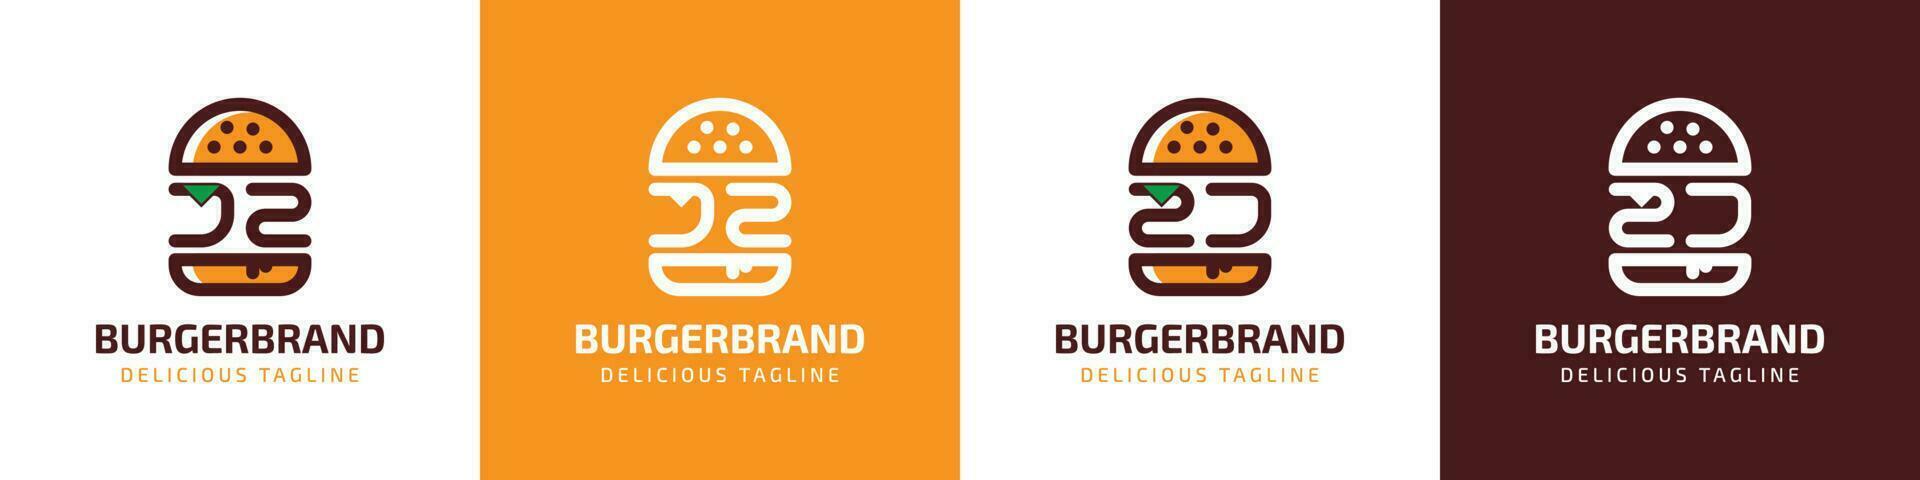 lettre jz et zj Burger logo, adapté pour tout affaires en relation à Burger avec jz ou zj initiales. vecteur